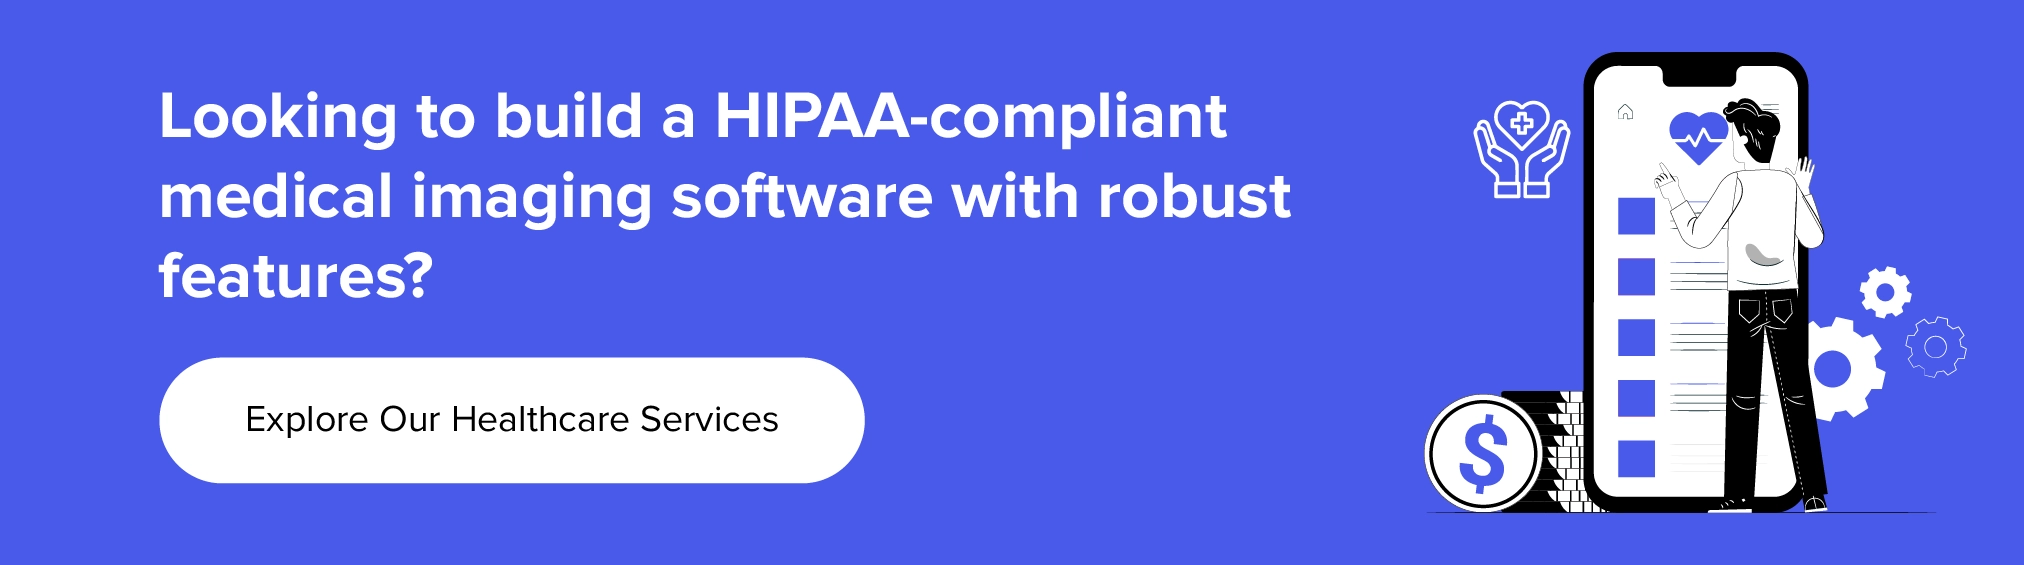 collaborare con noi per creare un software di imaging medico conforme a HIPAA